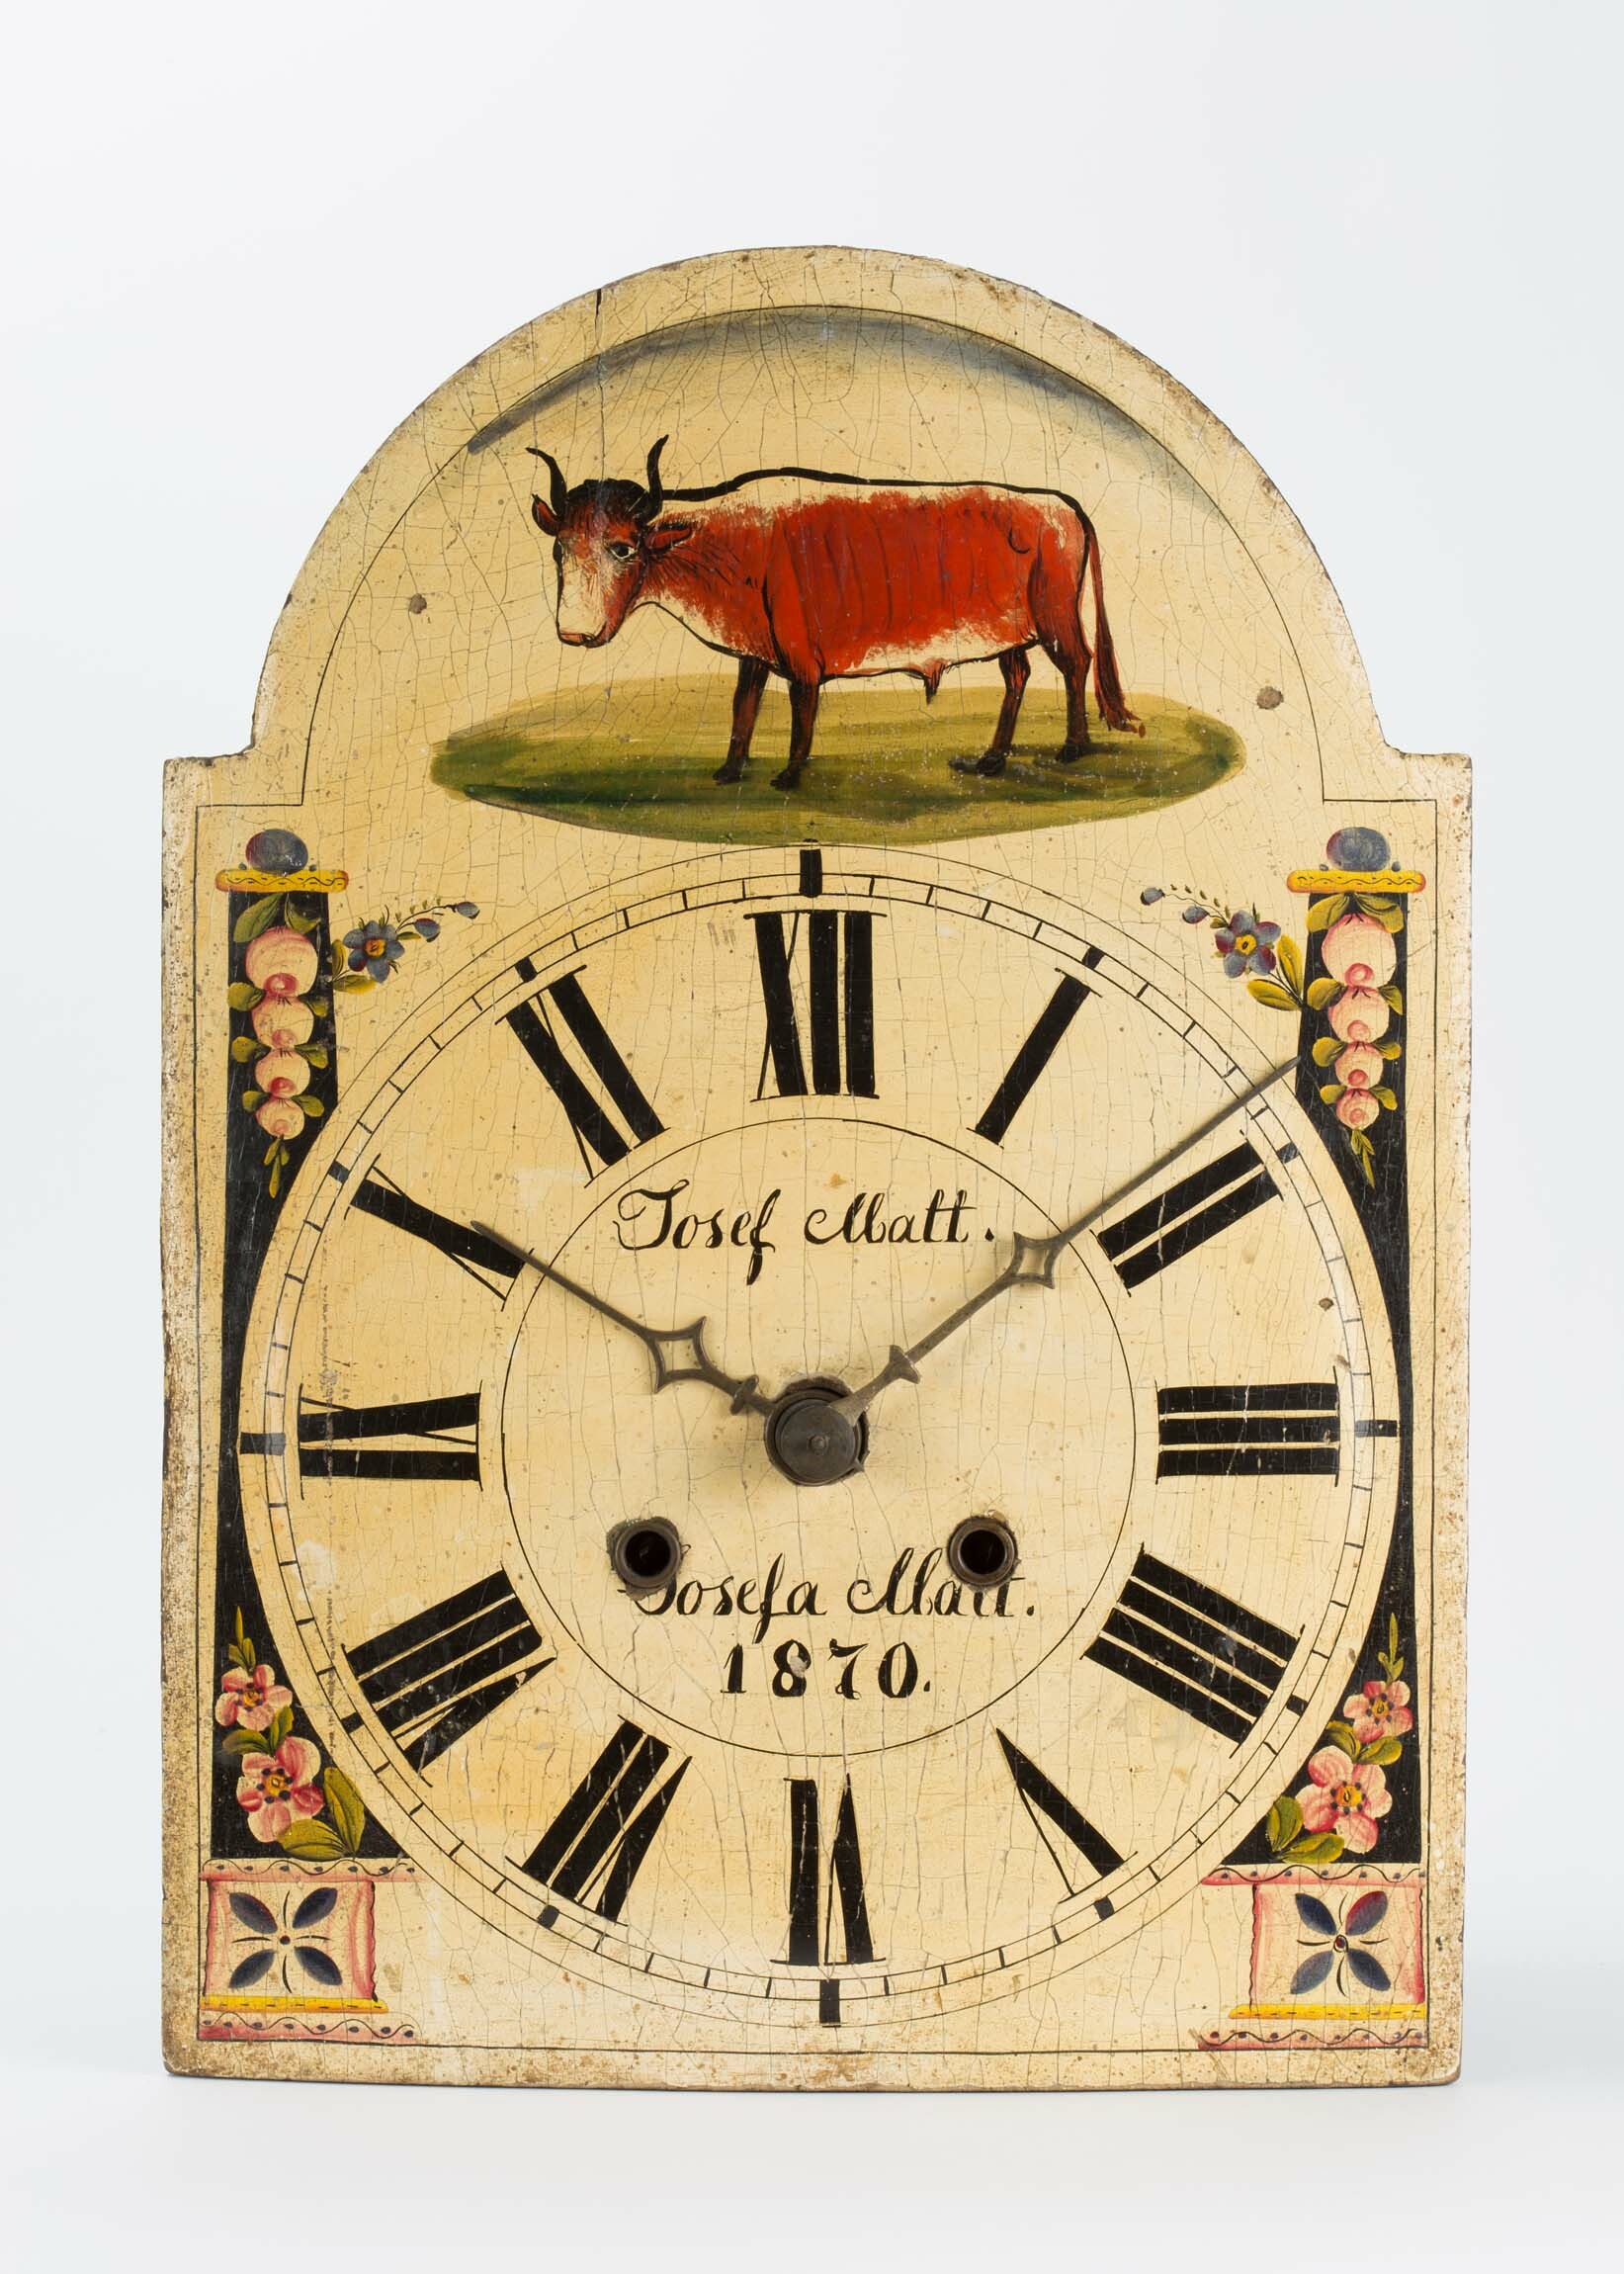 Lackschilduhr, Schwarzwald, 1870 (Deutsches Uhrenmuseum CC BY-SA)